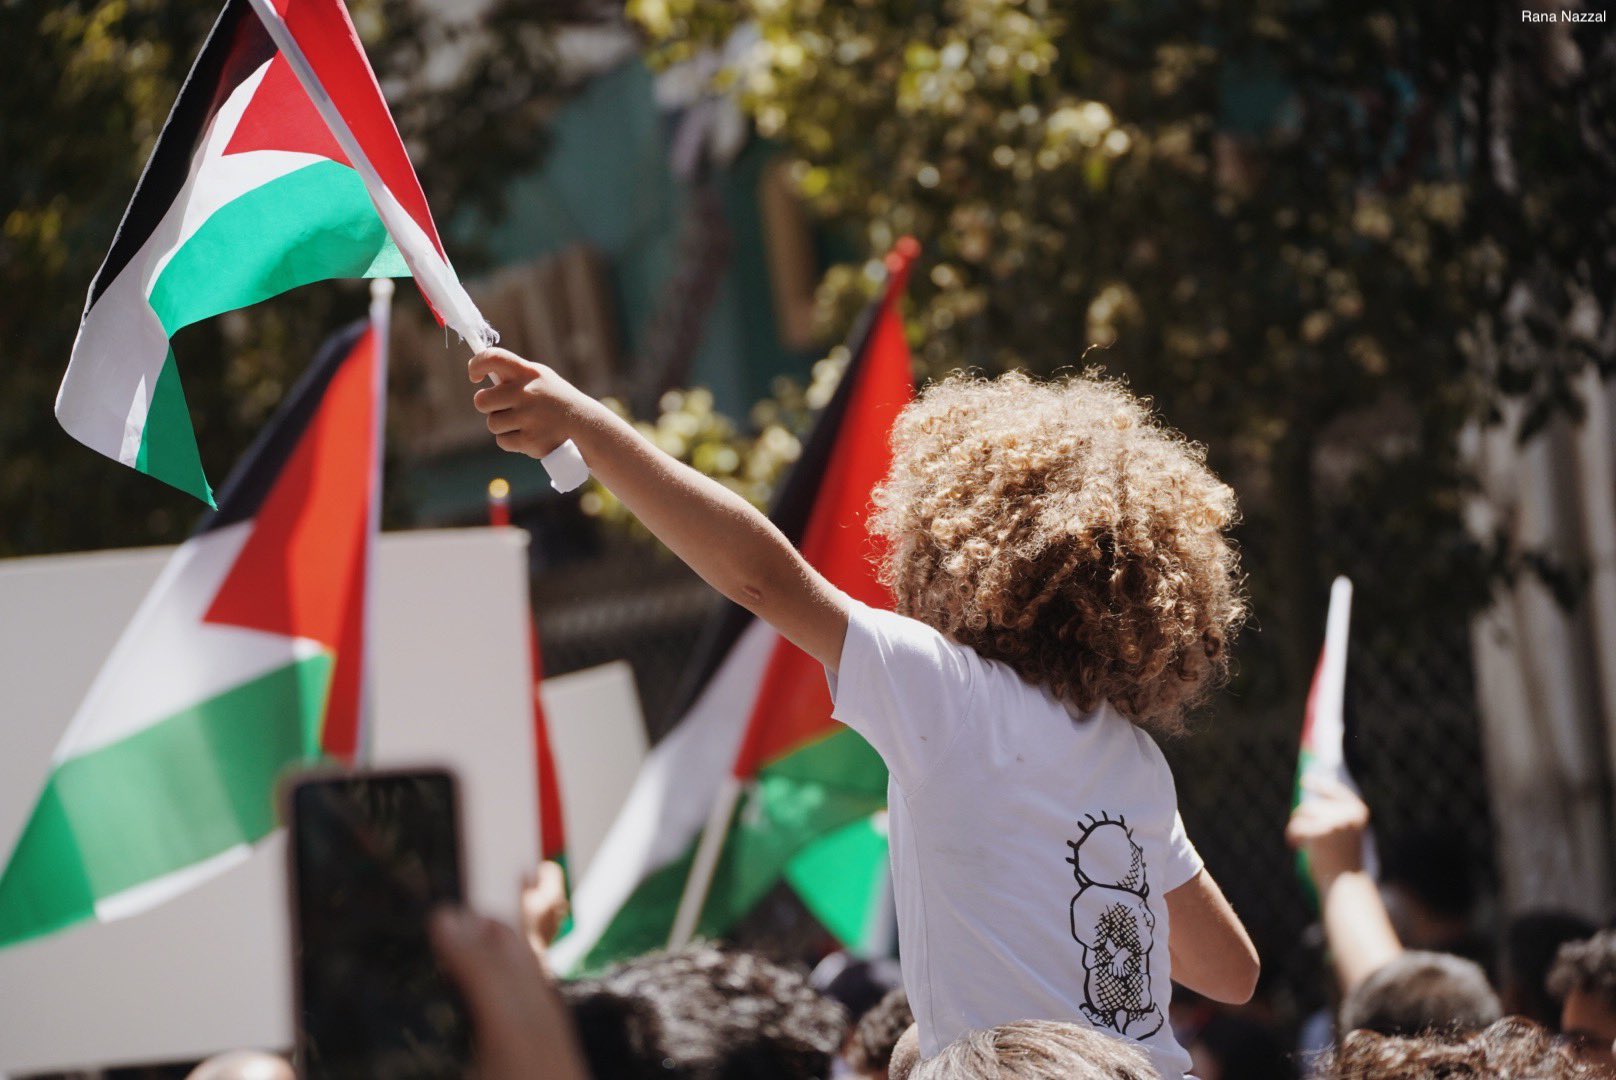 الحملة الفلسطينية للمقاطعة الأكاديمية والثقافية: هجوم جاك لانغ إخفاء للتواطؤ مع الاستعمار والأبارتهايد الإسرائيلي